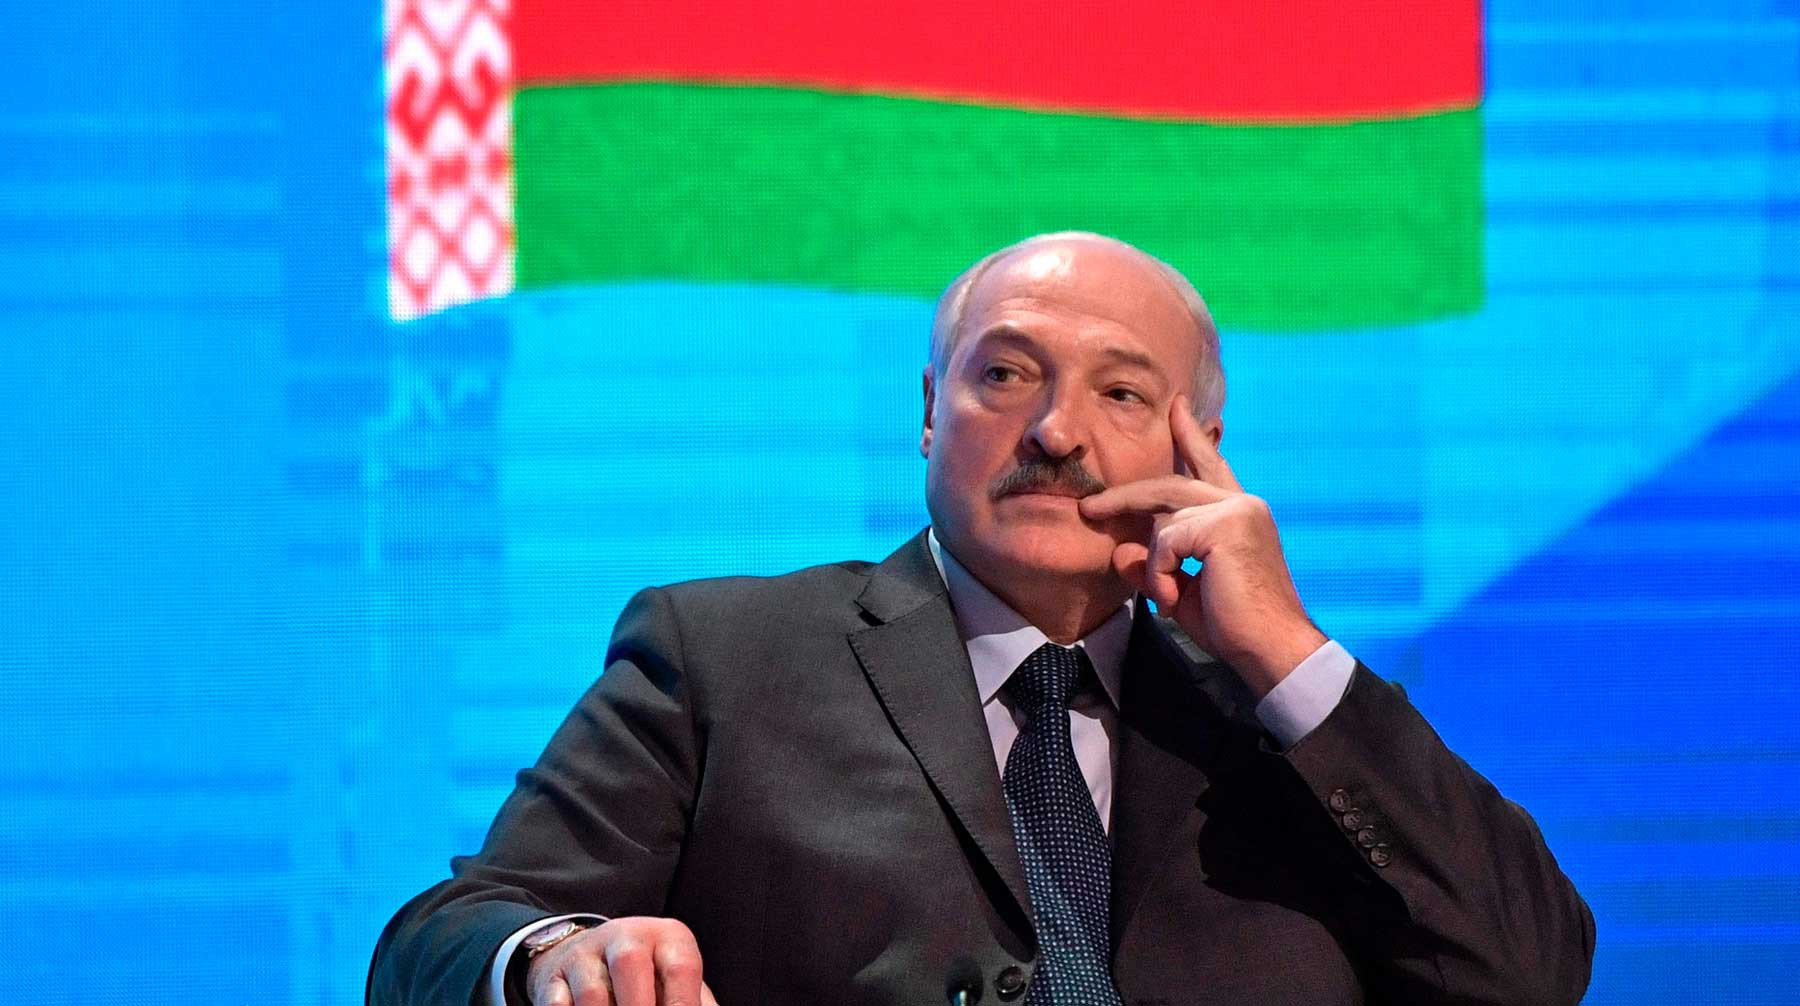 Dailystorm - Лукашенко доведет Белоруссию «до Украины»: в Госдуме предостерегли Минск от антироссийской риторики